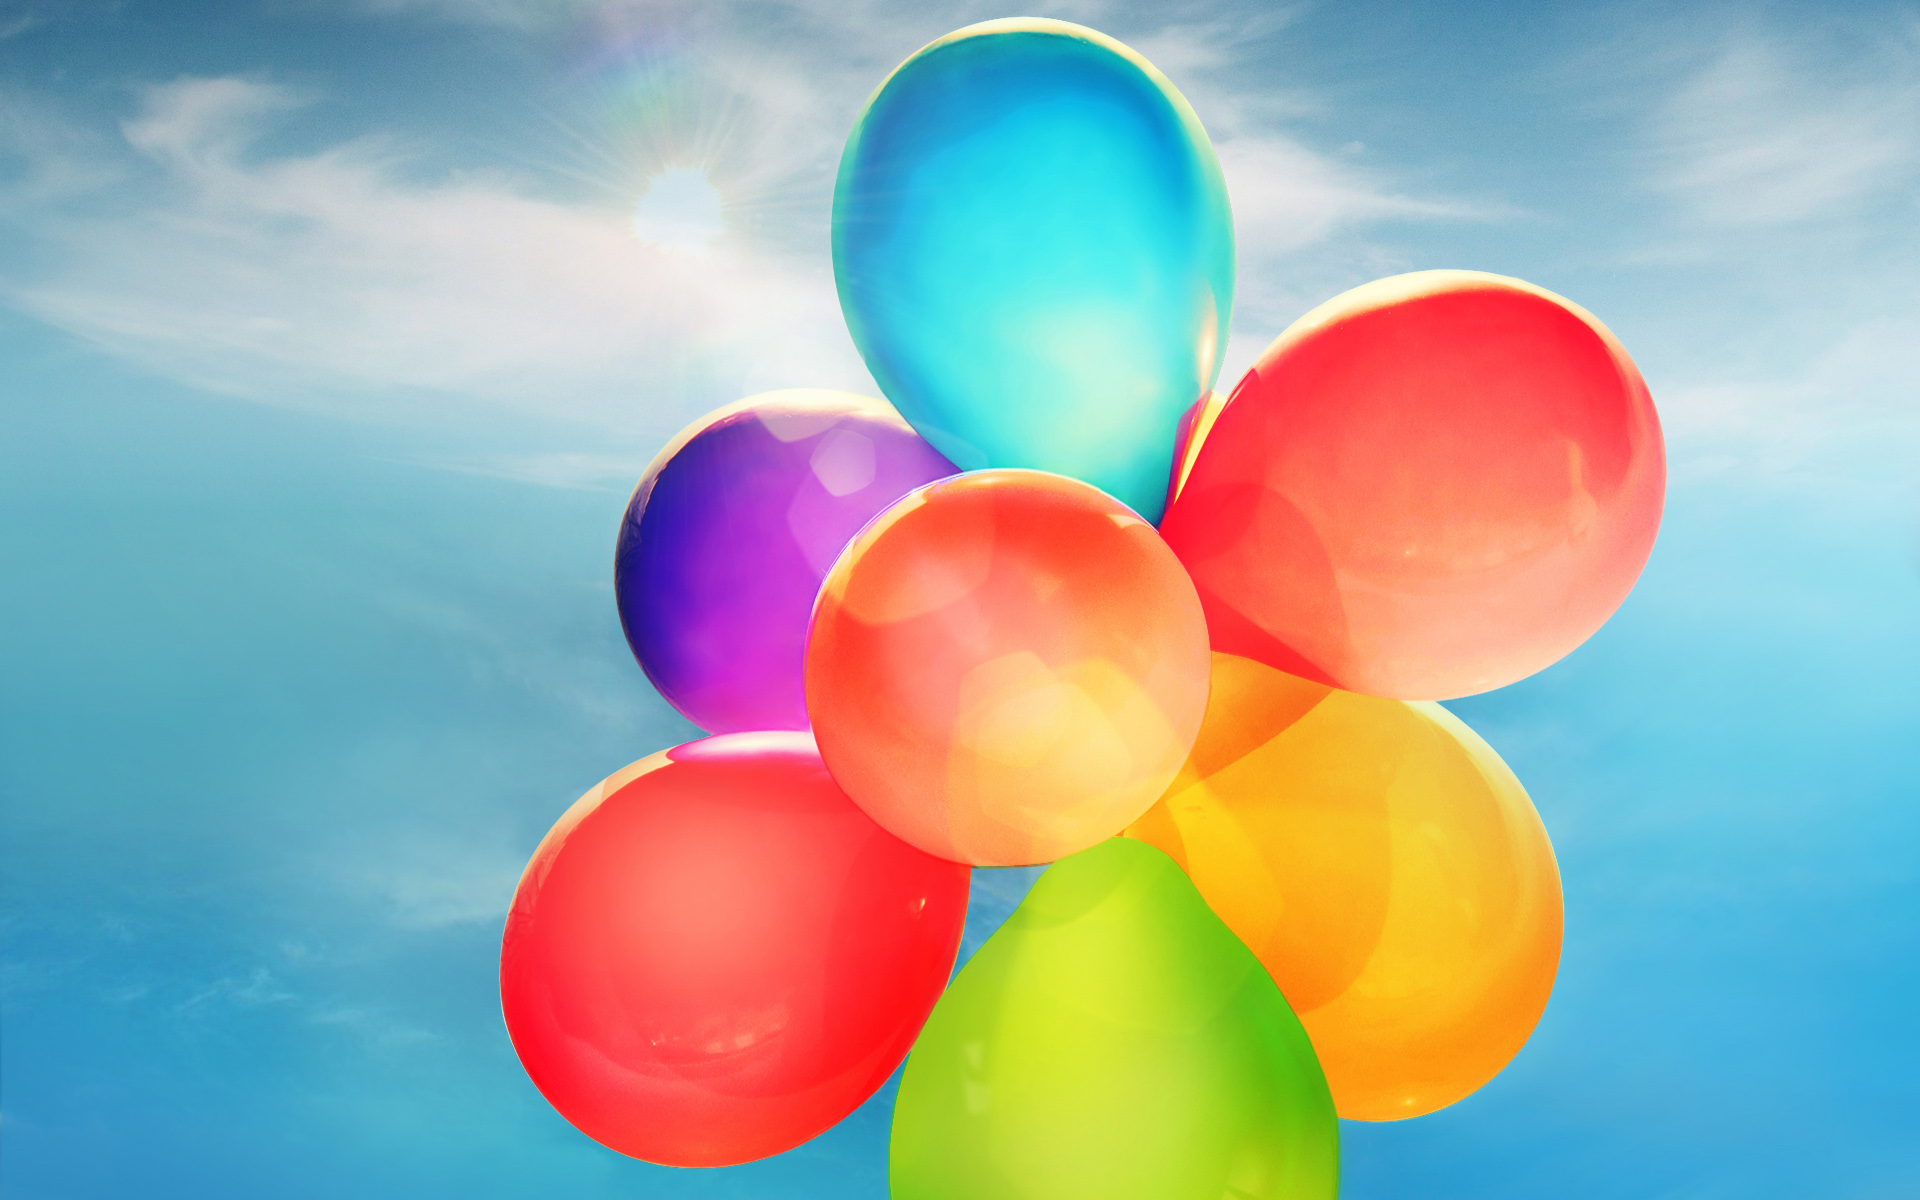 Colorful Balloons9106815709 - Colorful Balloons - Colorful, Coffee, Balloons